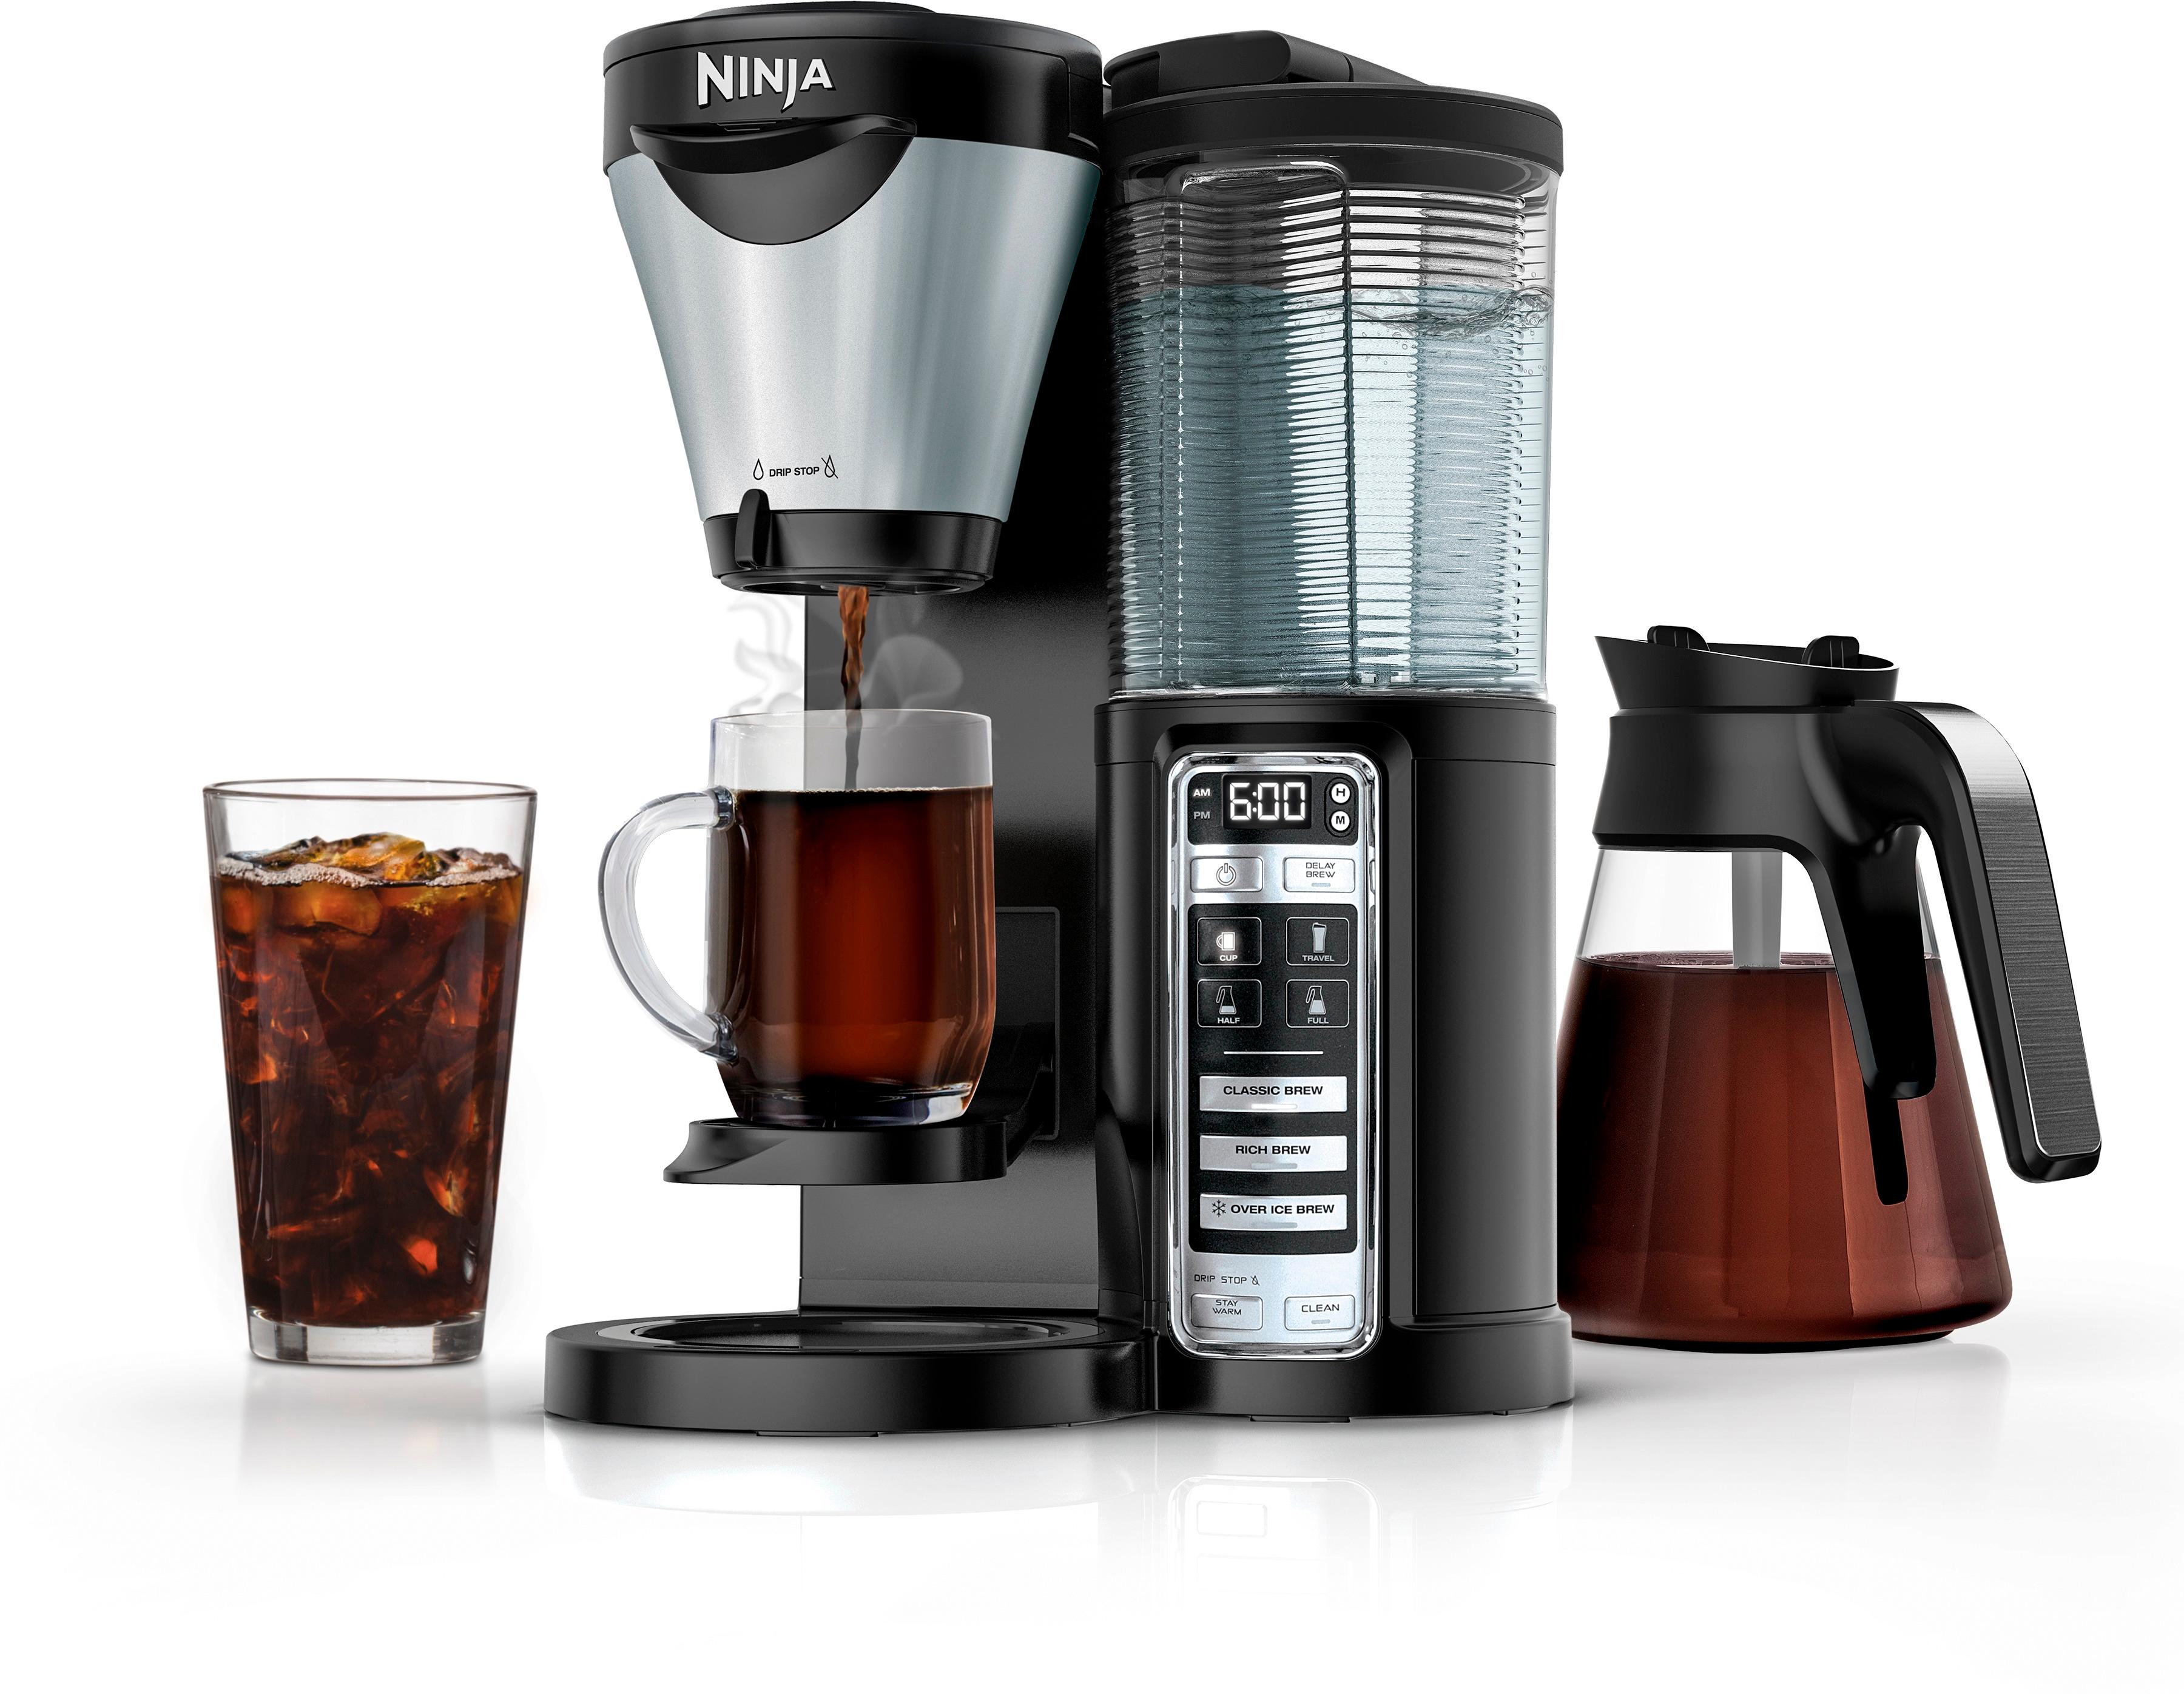 Best Buy: Ninja Coffee Bar 10-Cup Coffee Maker Black/Stainless CF091